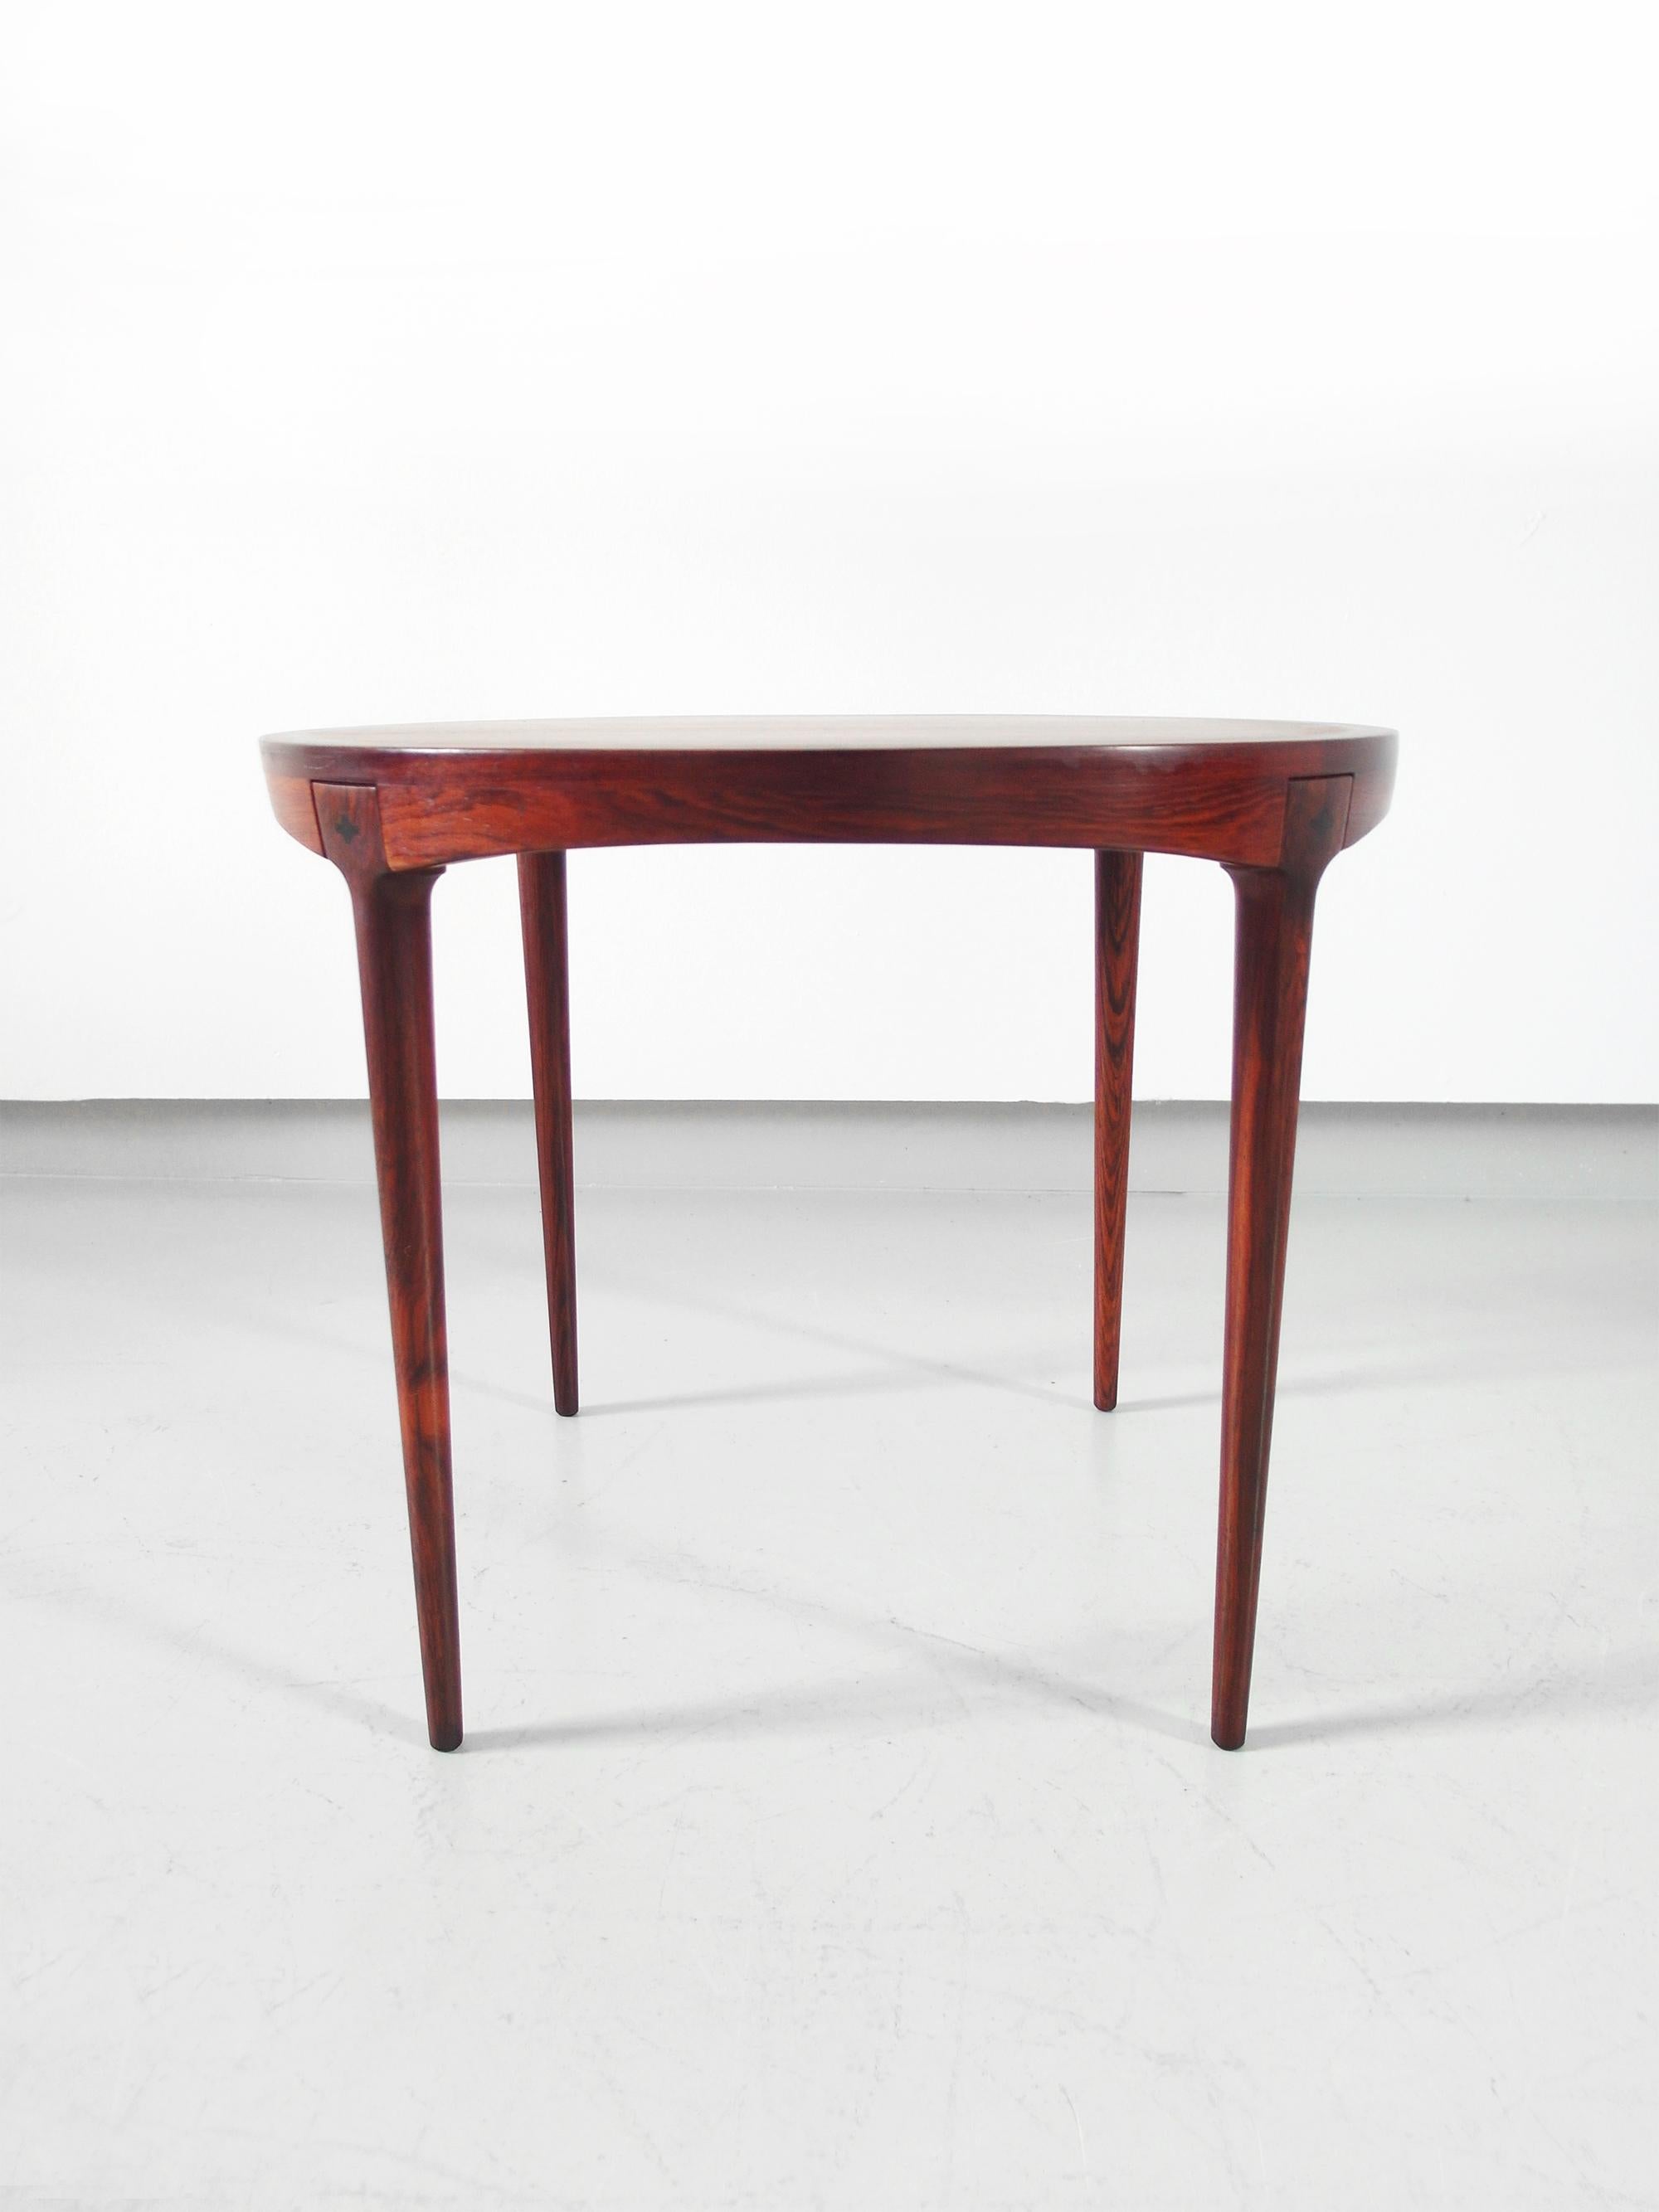 Mid-Century Modern Scandinavian Side Table in Rosewood by Haug Snekkeri, Bruksbo Norway, 1960s For Sale